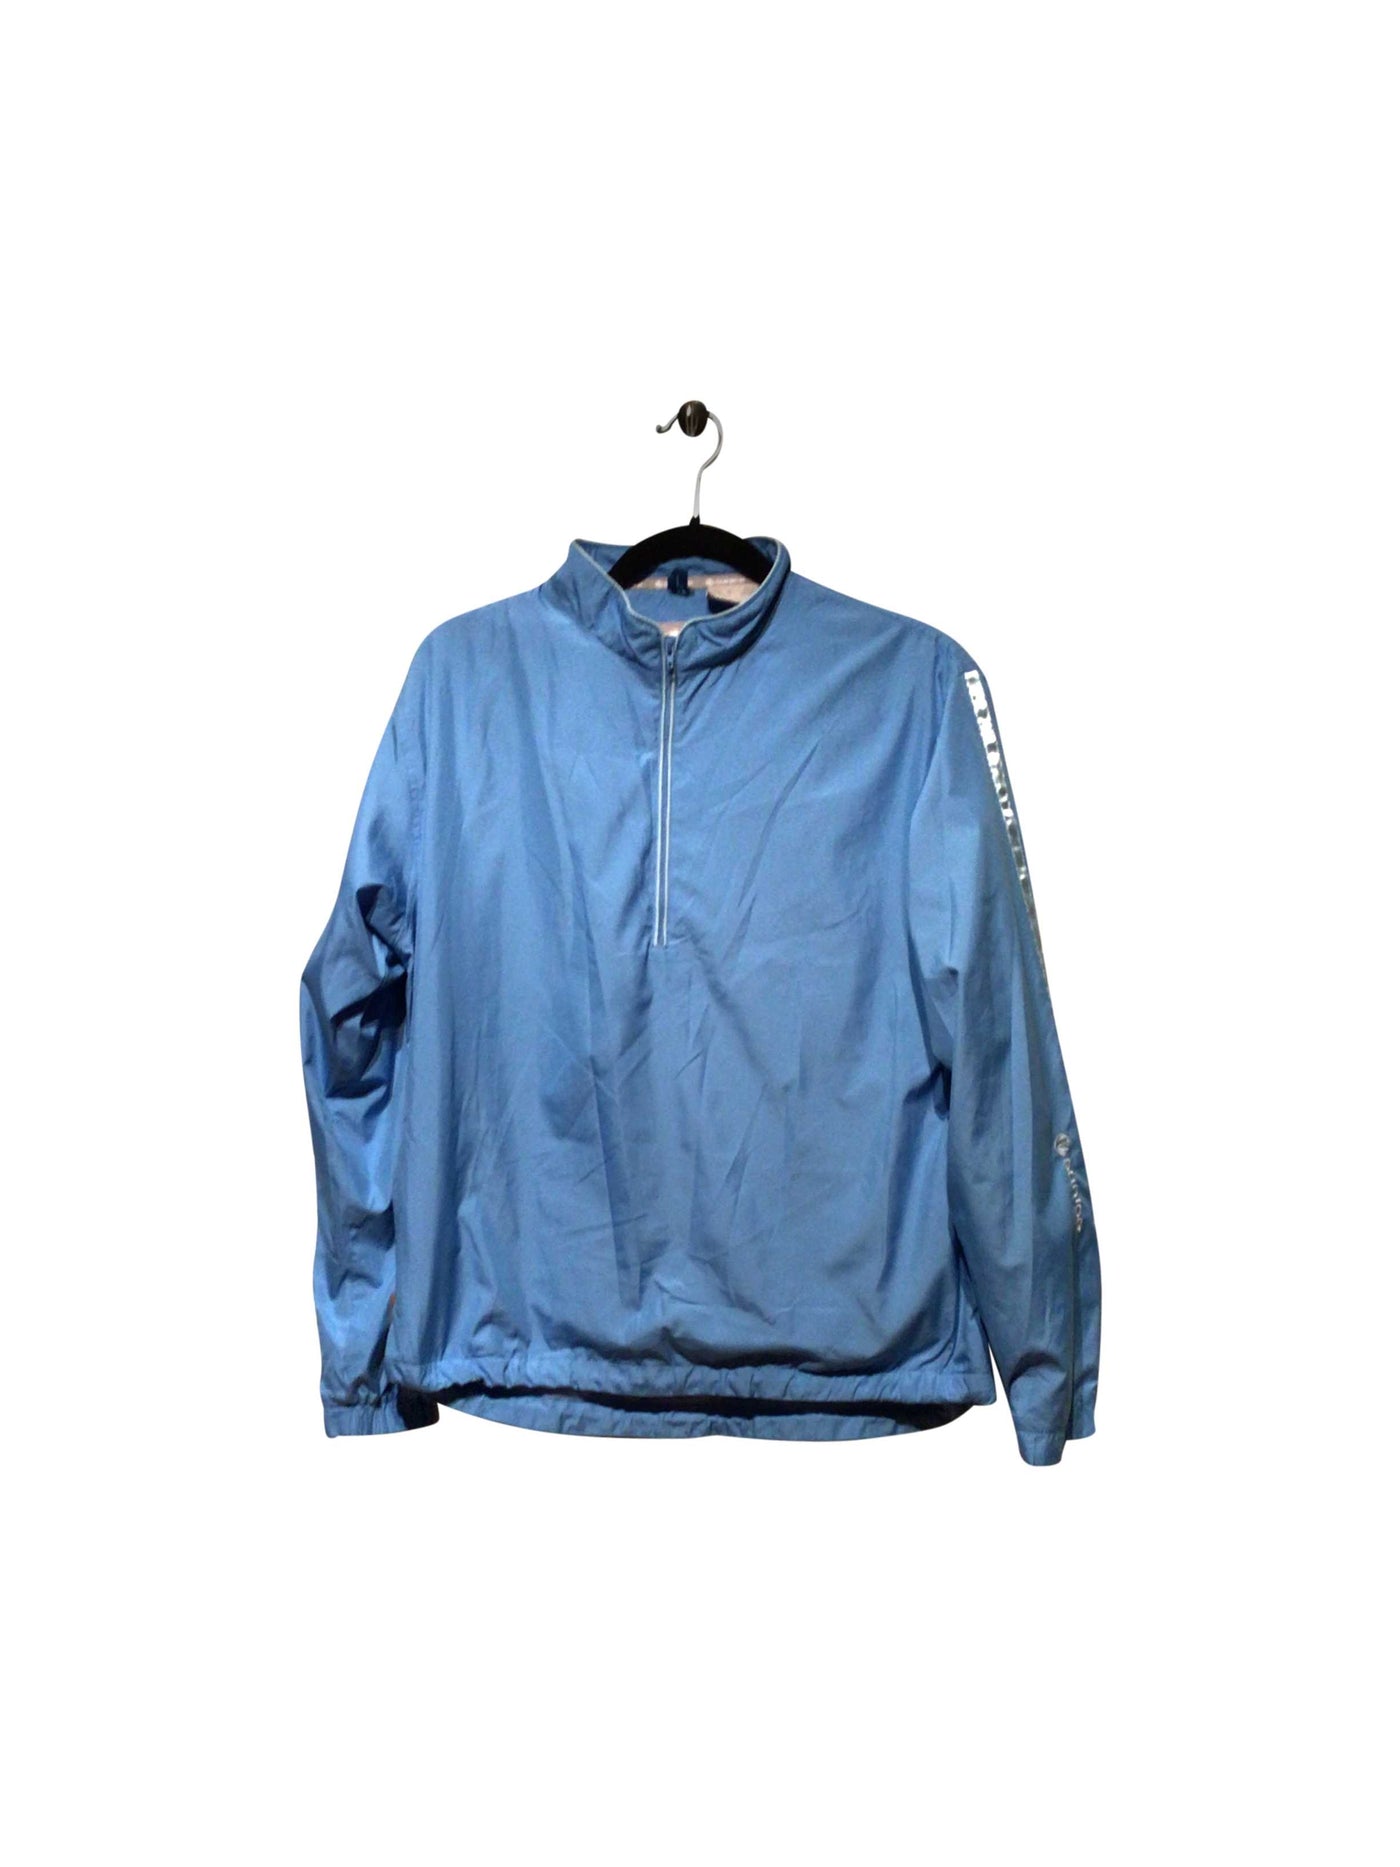 SUNICE Regular fit Jacket in Blue  -  M  26.99 Koop